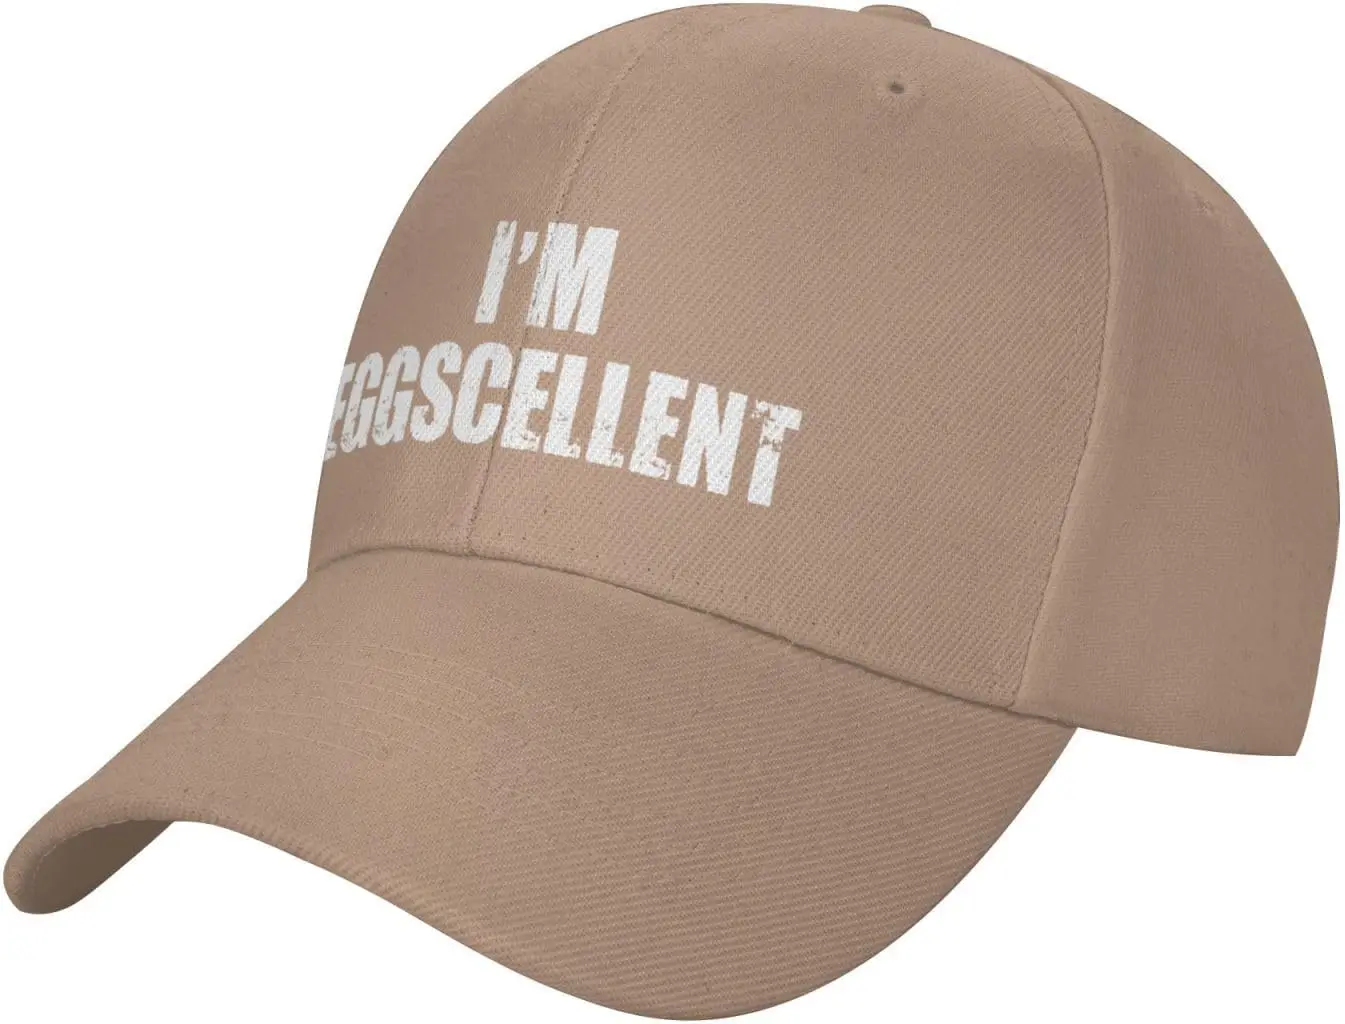 

I'm Eggscellent Baseball Cap Low Profile Dad Hat Casual Curved Brim Trucker Hats Black